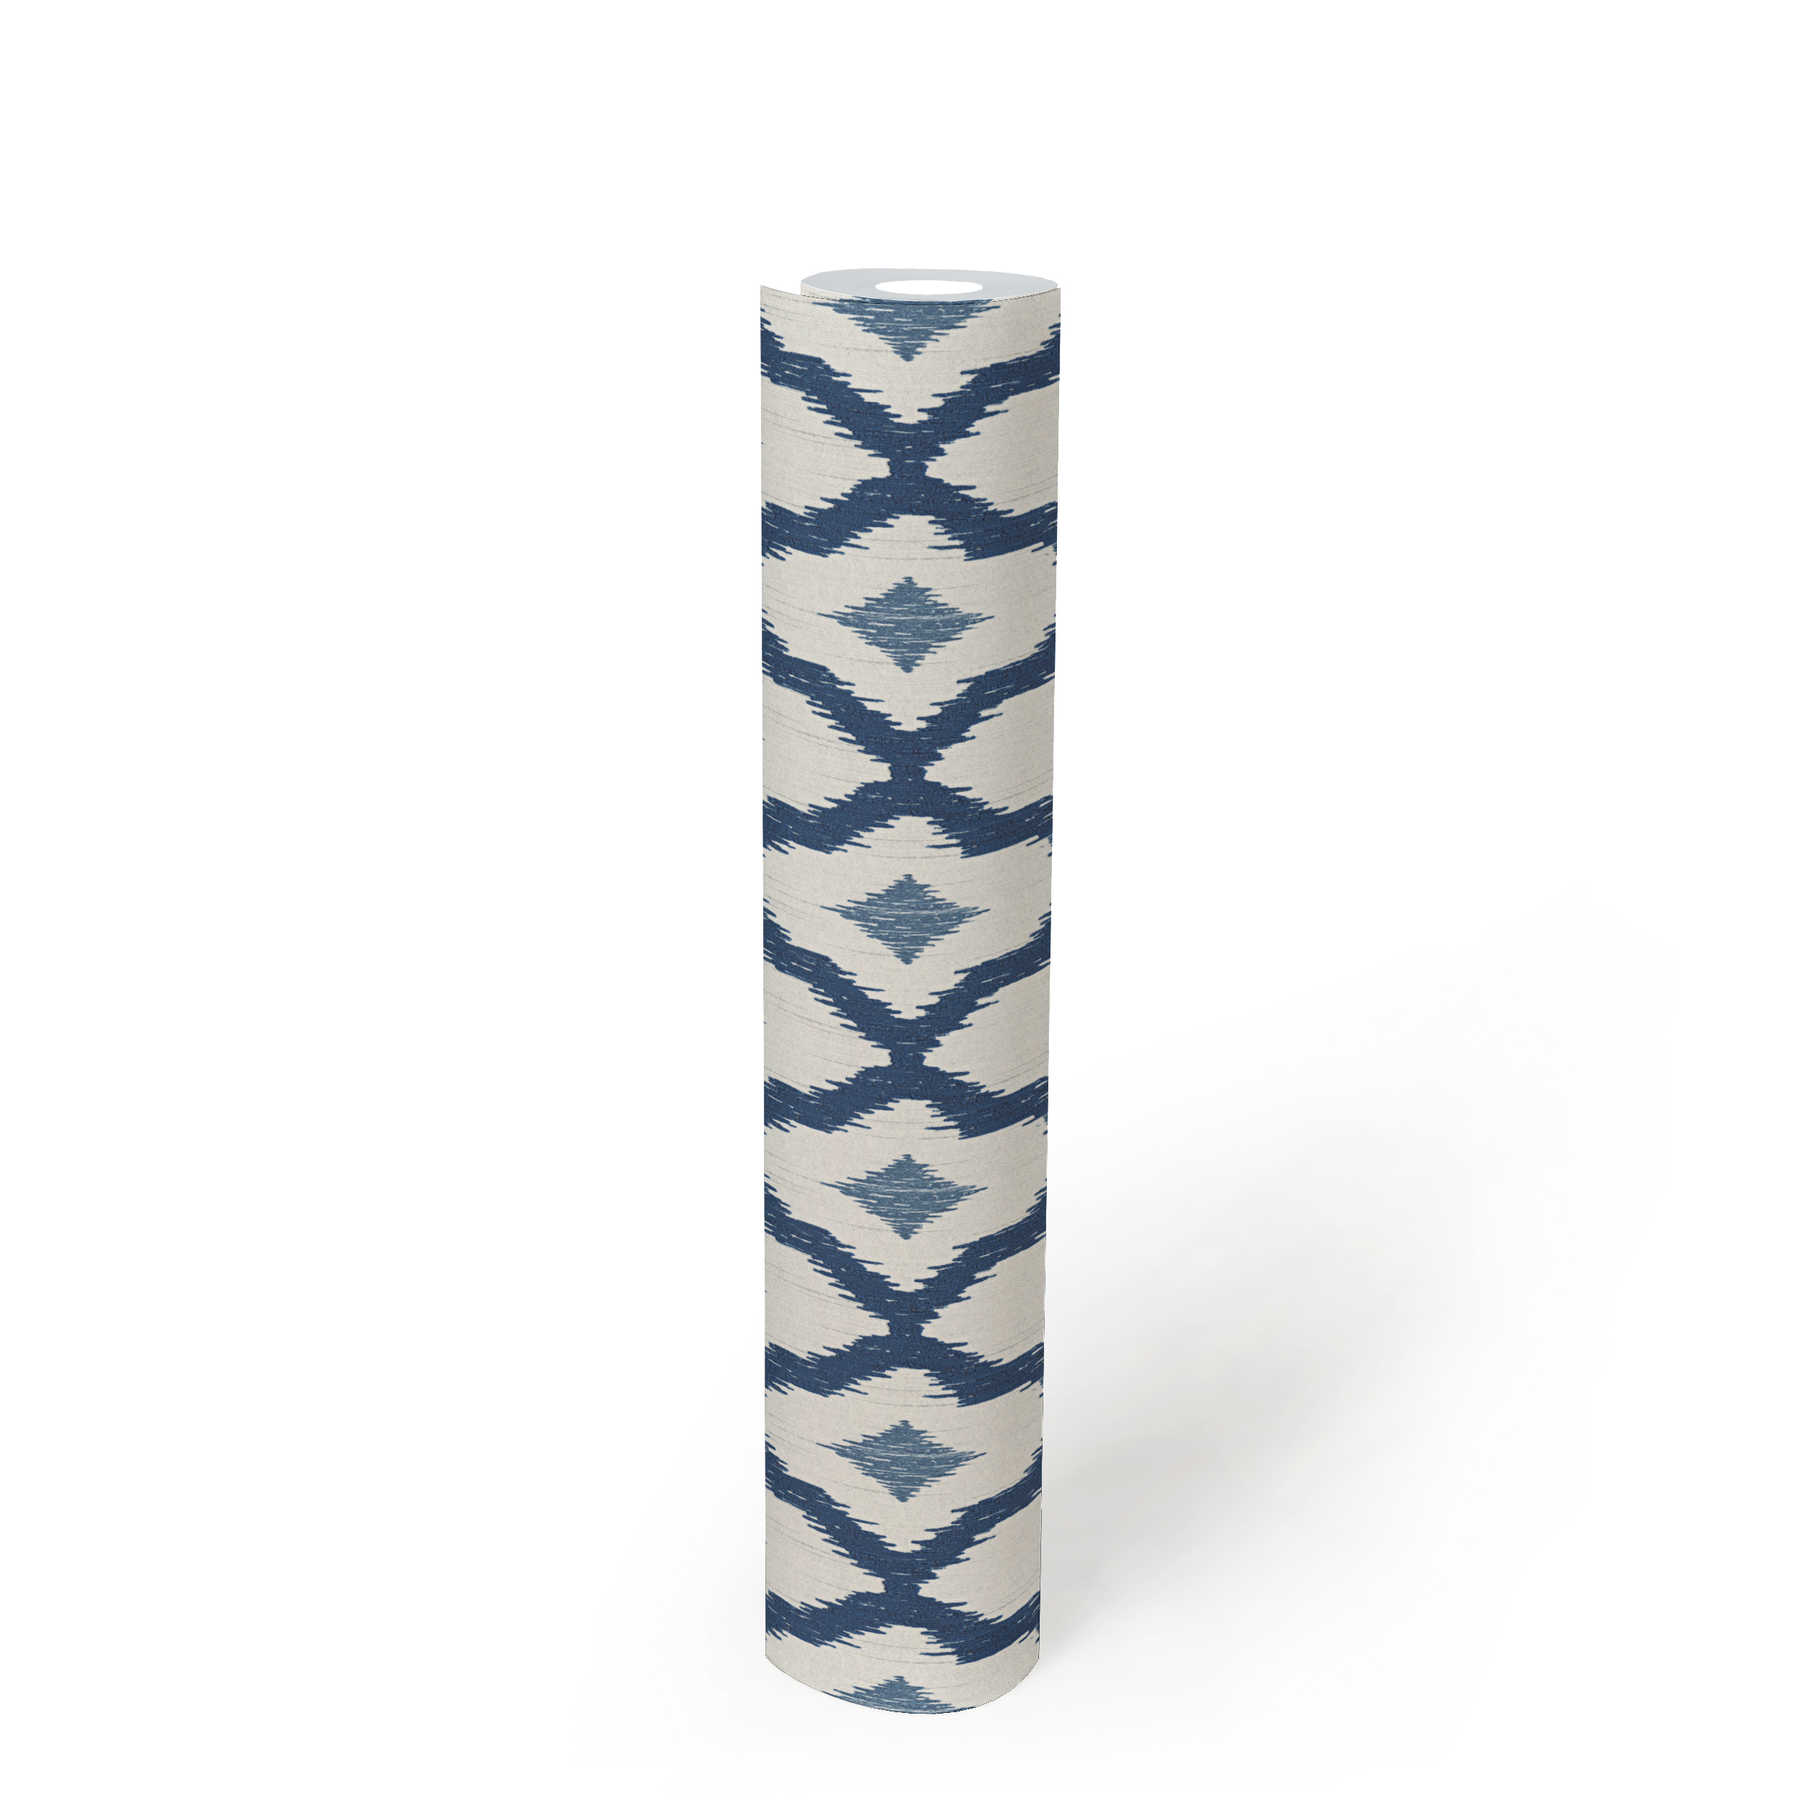             Vliesbehang ikat patroon met ruitjesmotief - blauw, wit
        